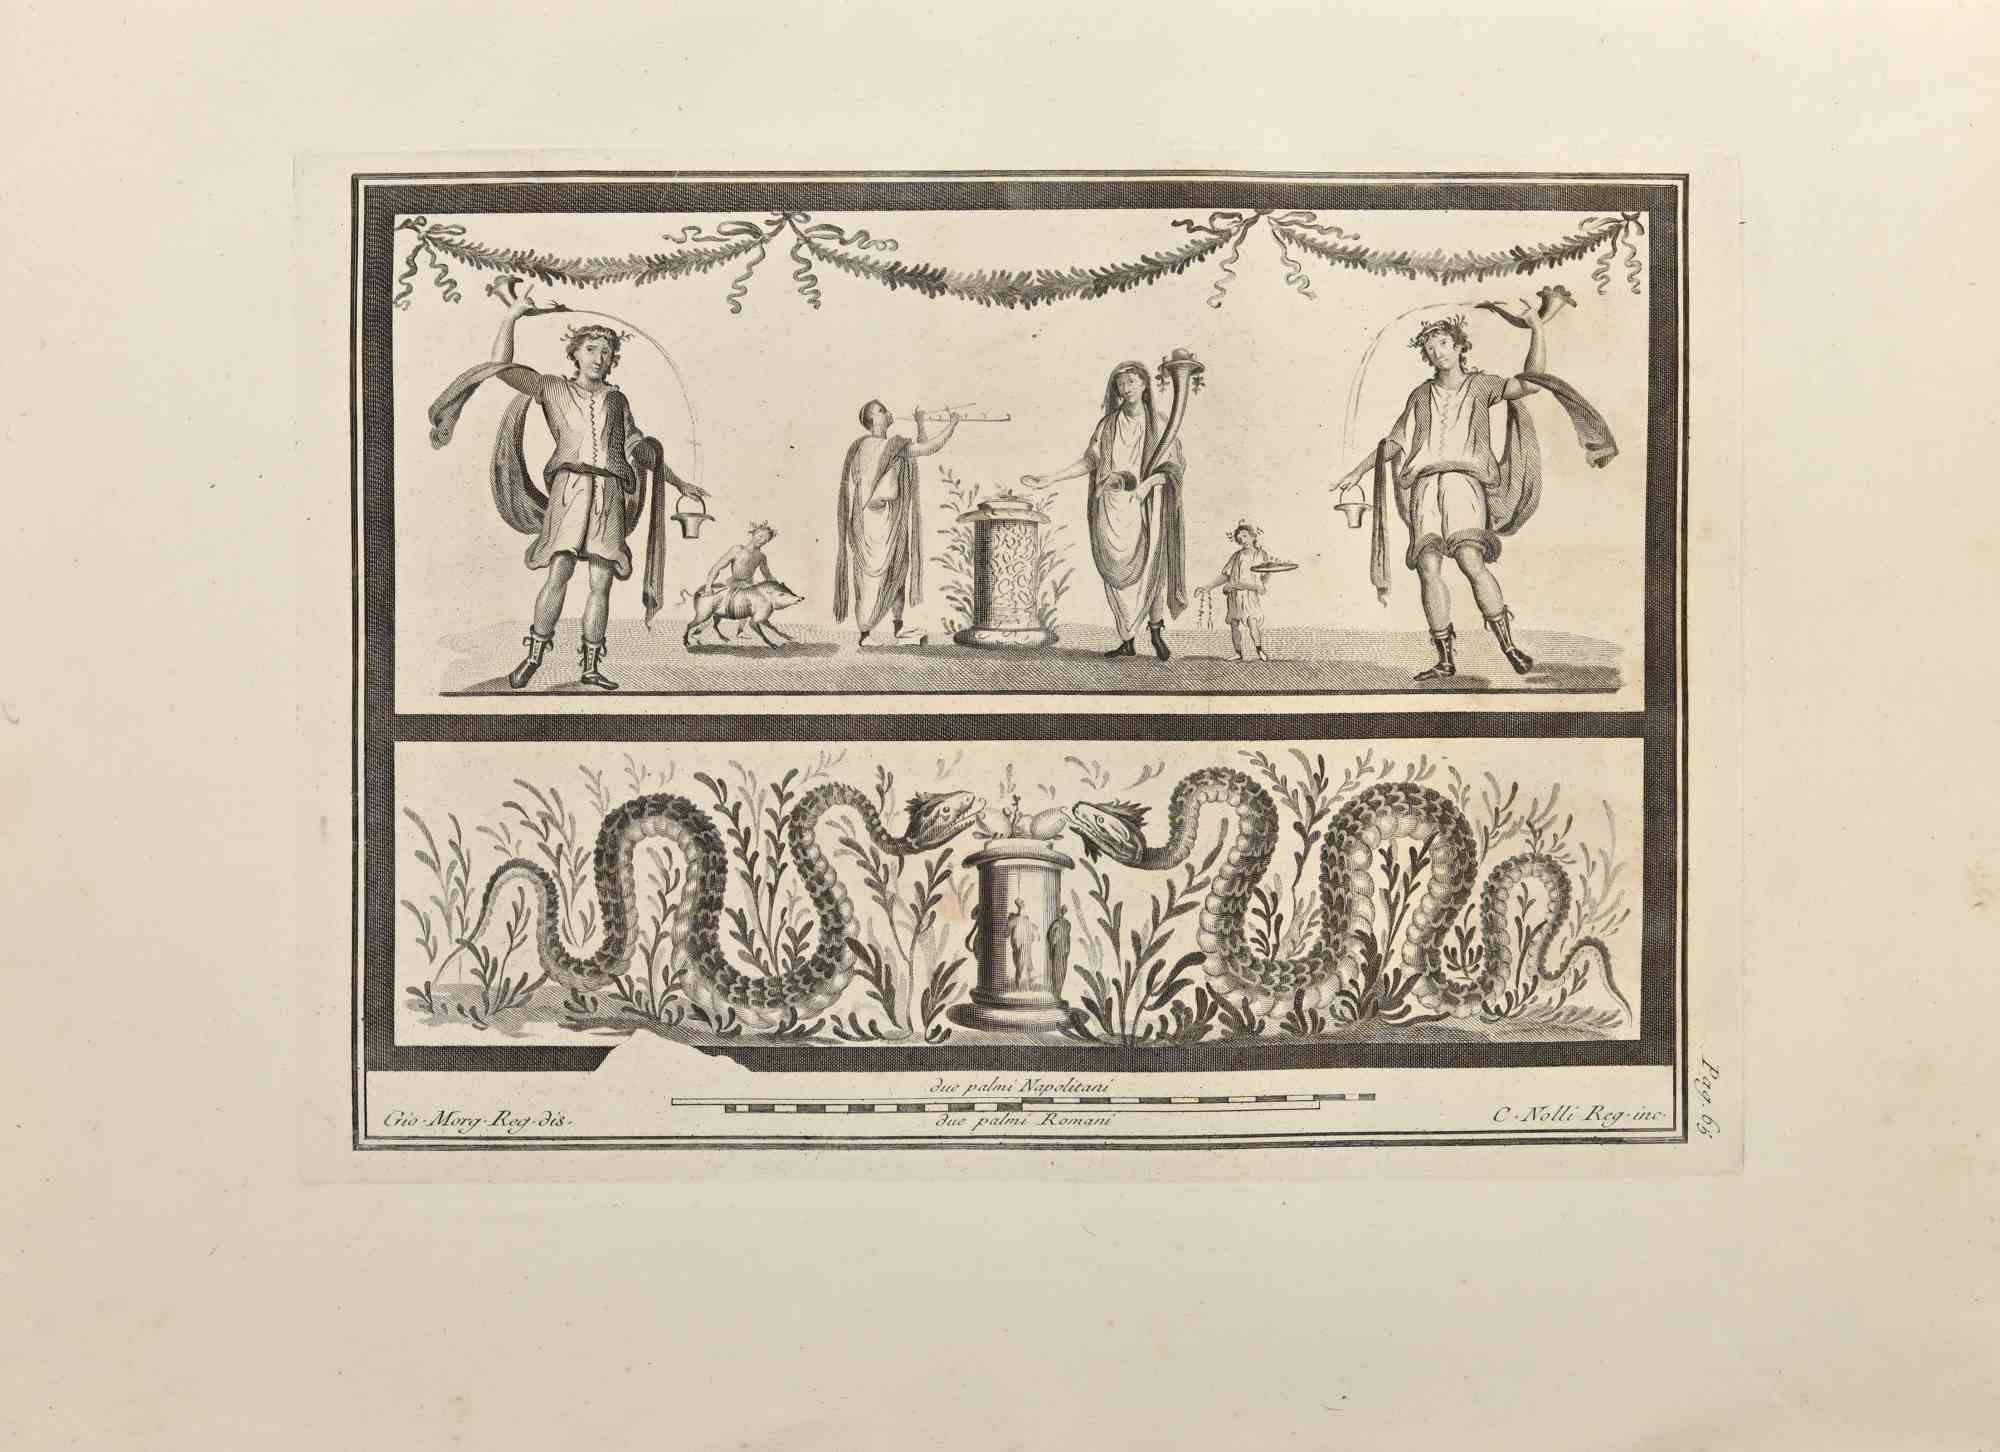 Schlangen und römische Zeremonie aus den "Altertümern von Herculaneum" ist eine Radierung auf Papier von Carlo Nolli aus dem 18. Jahrhundert.

Signiert auf der Platte.

Guter Zustand mit einigen Stockflecken und Falten aufgrund der Zeit.

Die